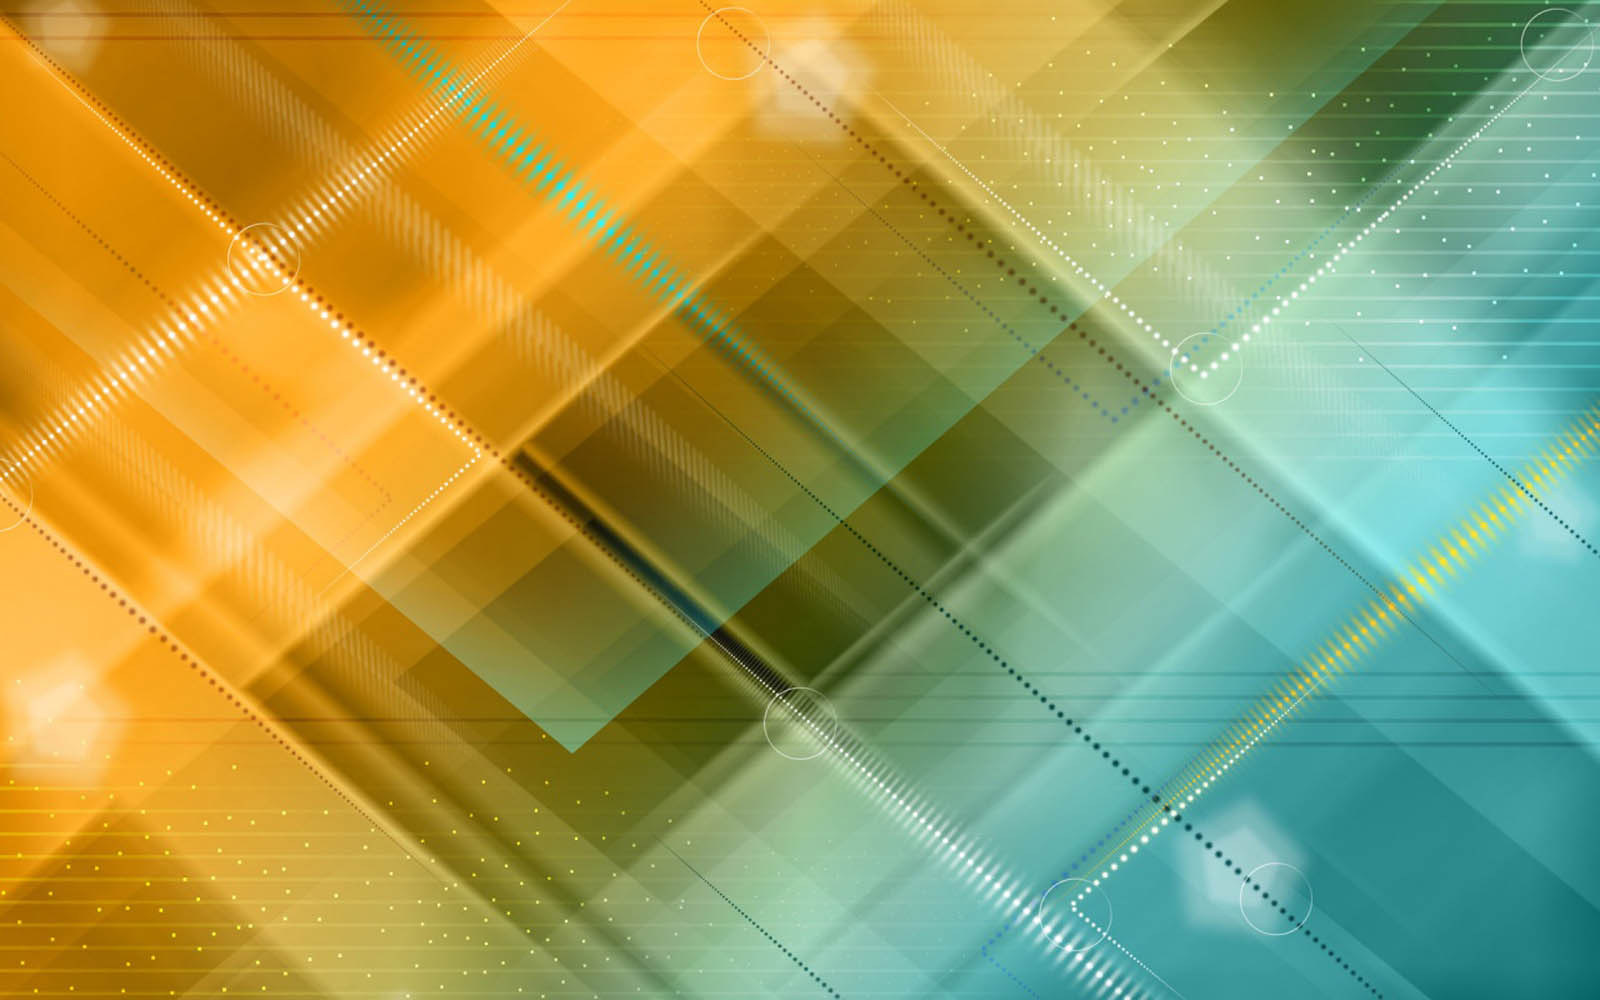 fond d'écran design hd,bleu,jaune,vert,orange,lumière